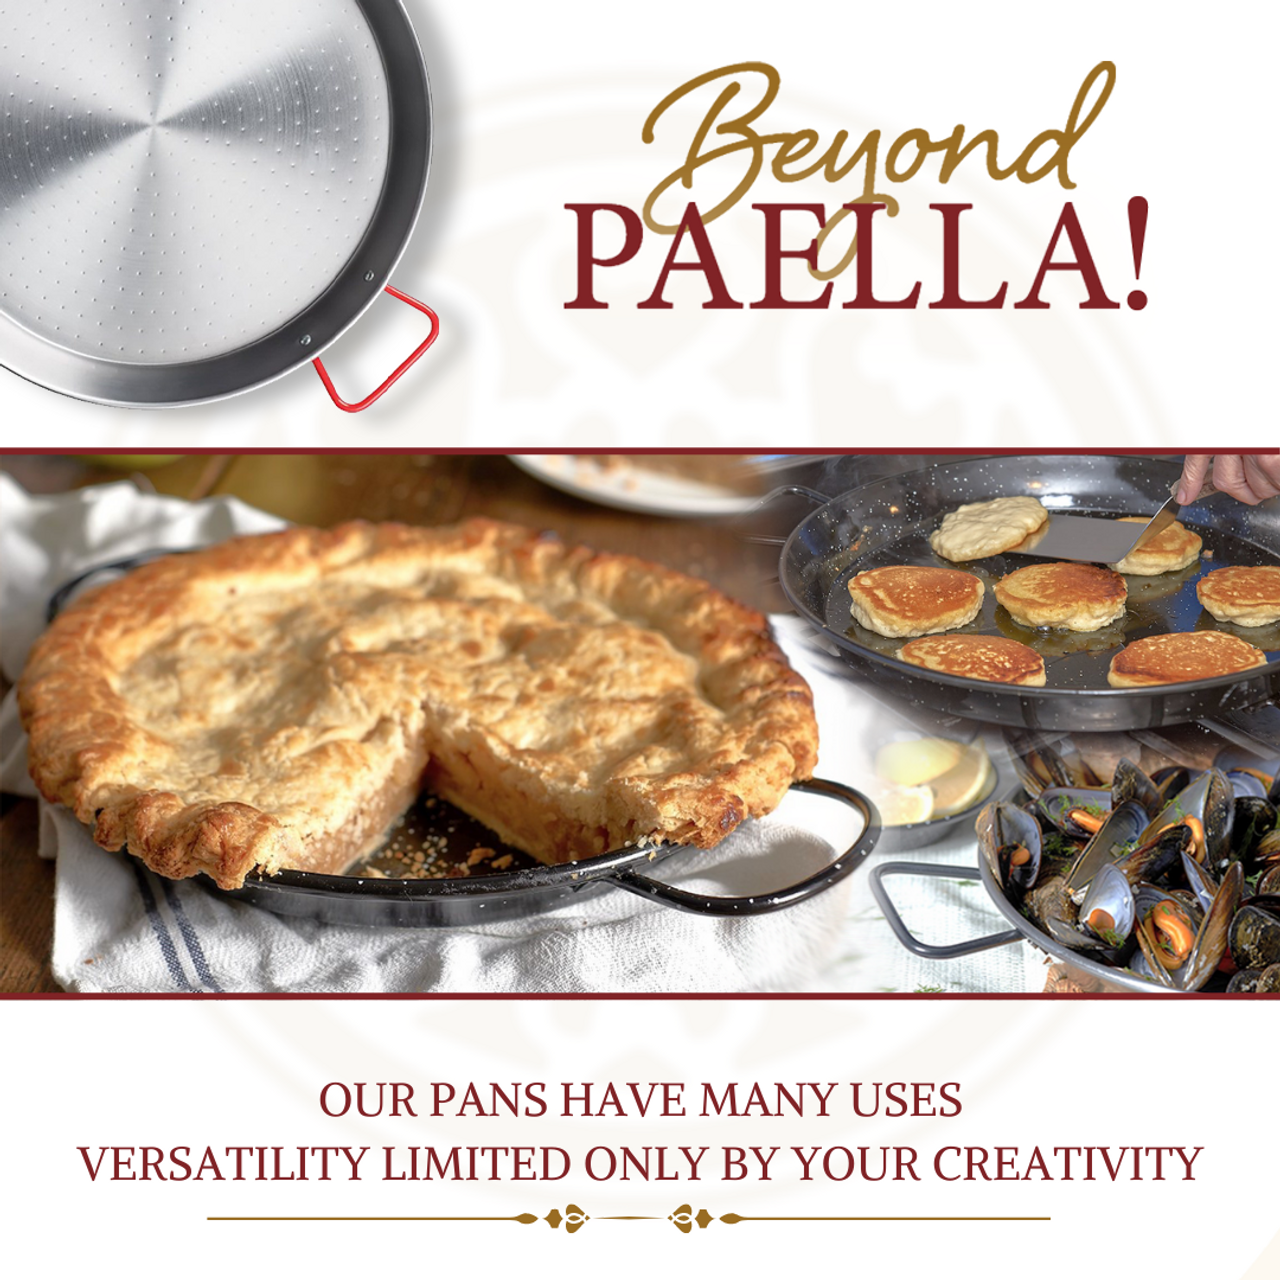 Paella Pan Set,Paella Burner and Stand Set,Paella Pan and Burner  Set,Paellera,20Inch Enameled Steel Paella Pan Paella Kit with Carry  Bag,Built-In